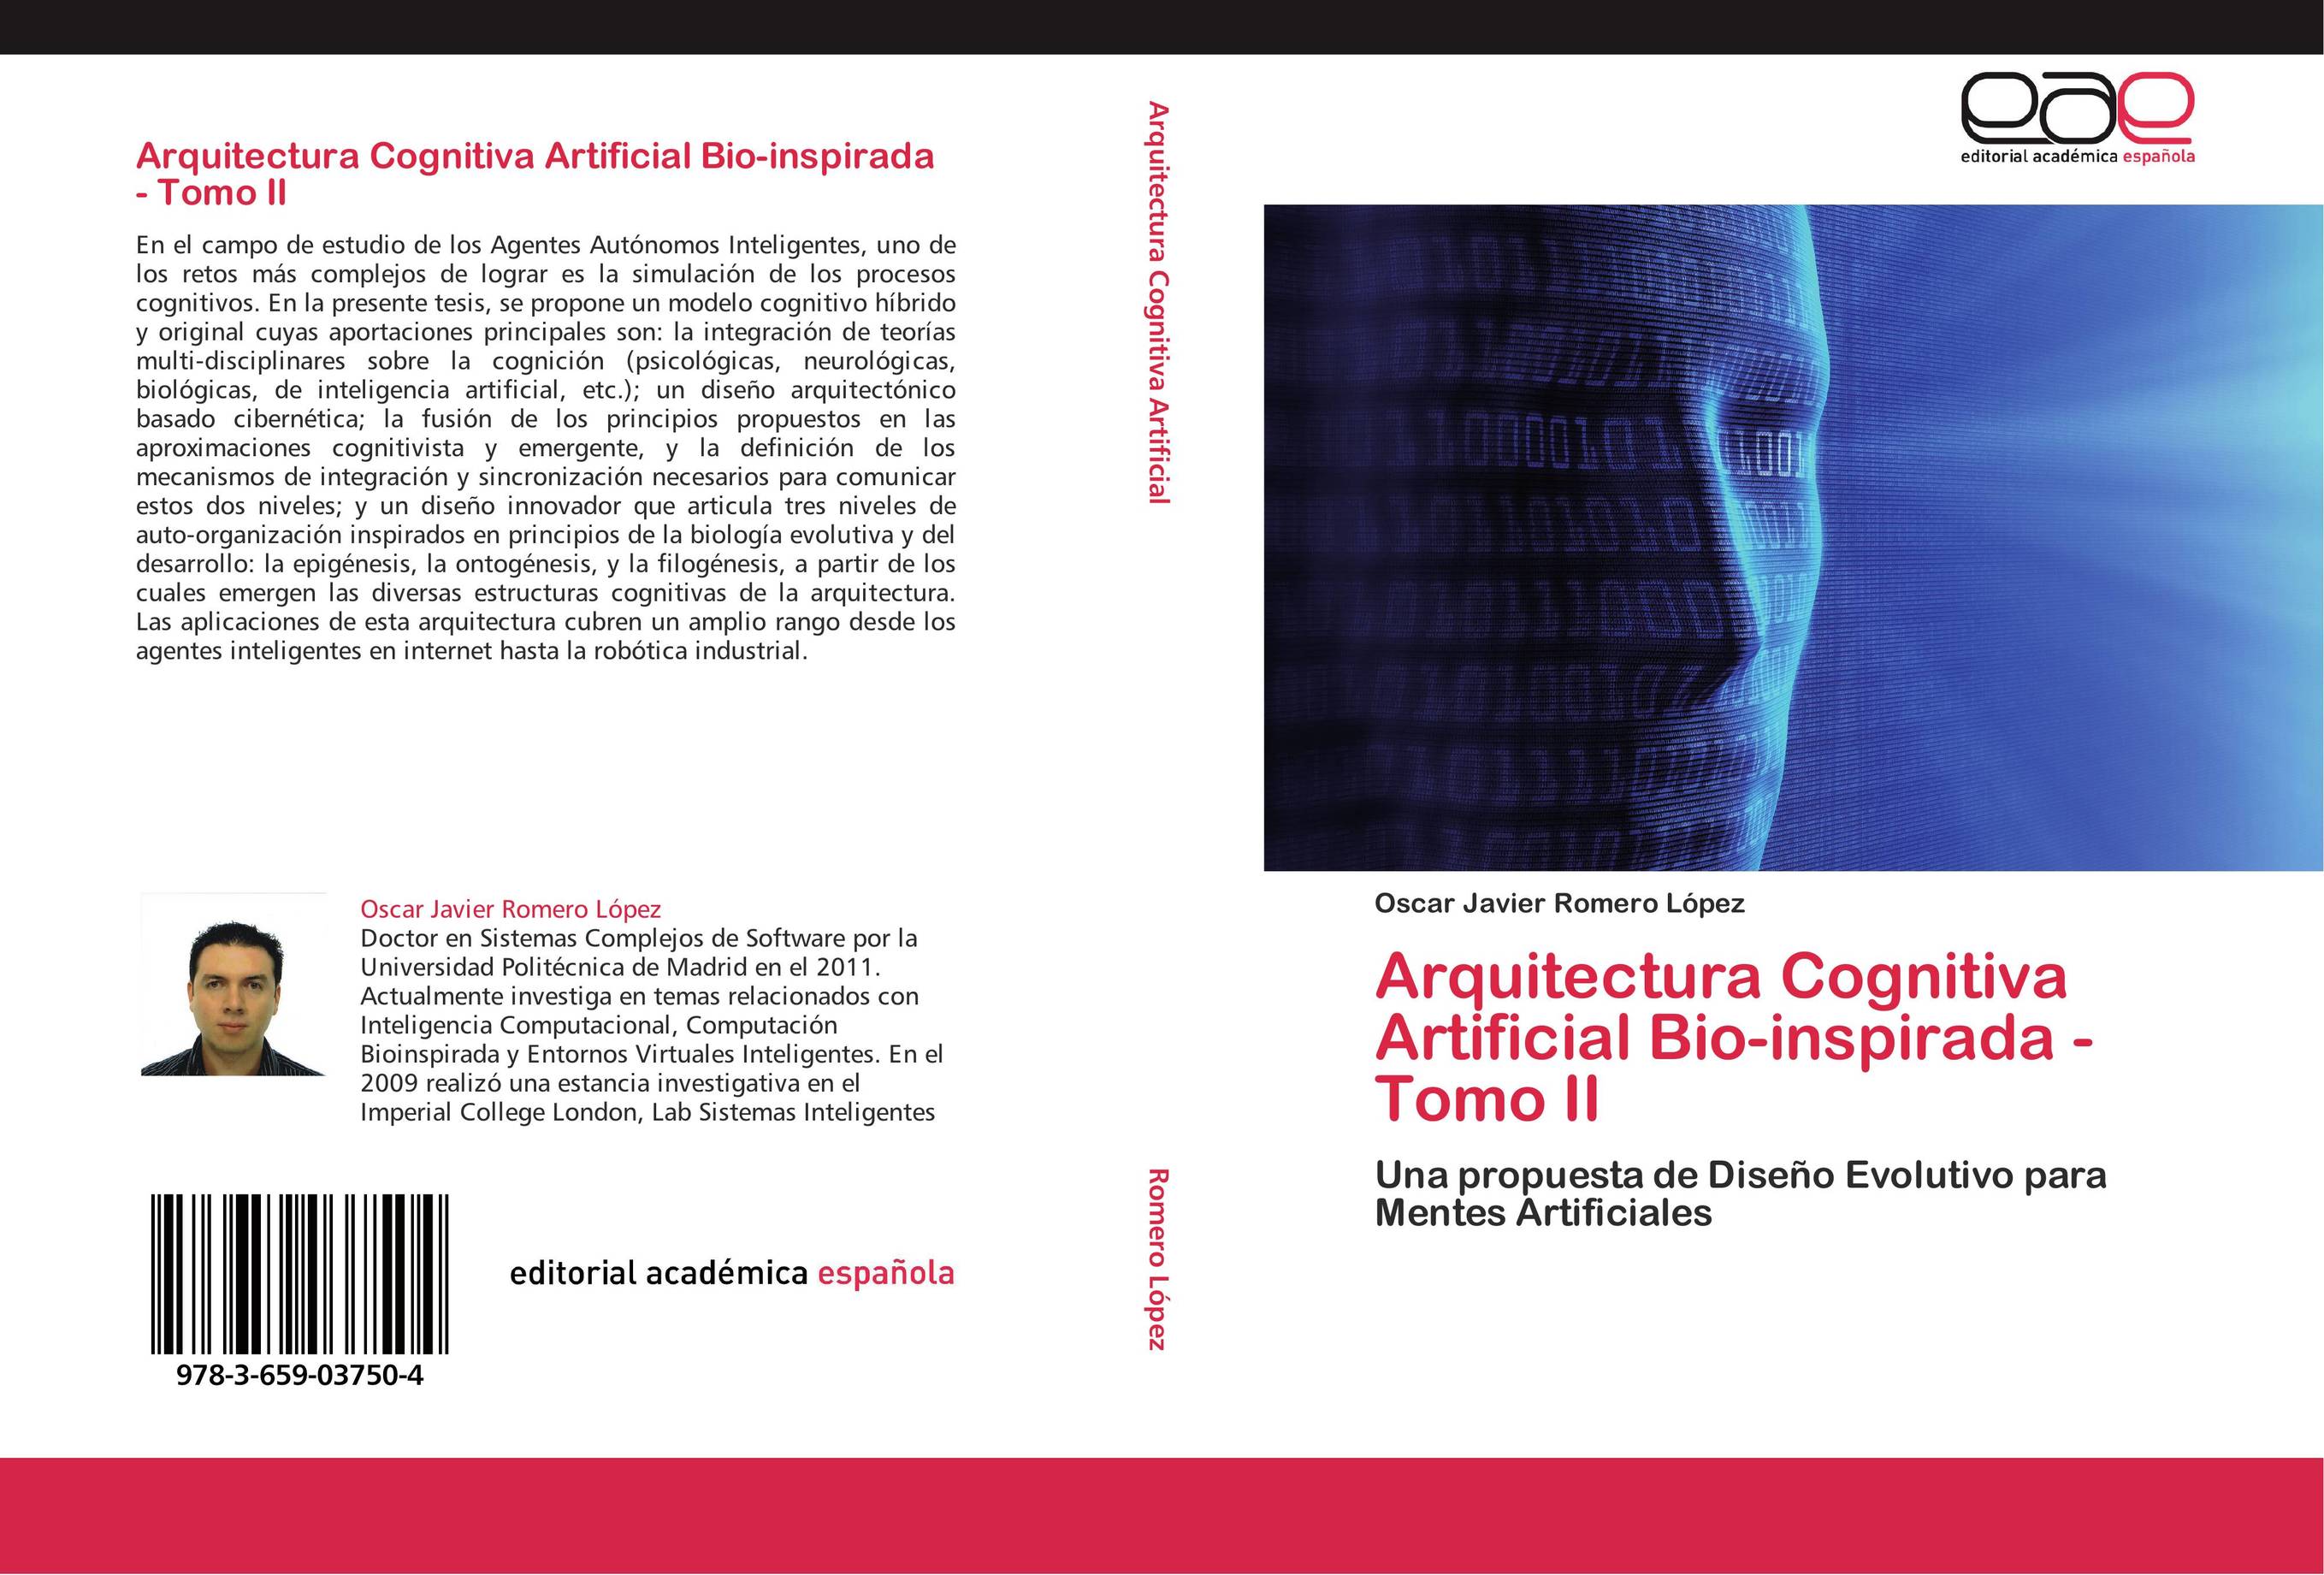 Arquitectura Cognitiva Artificial Bio-inspirada - Tomo II